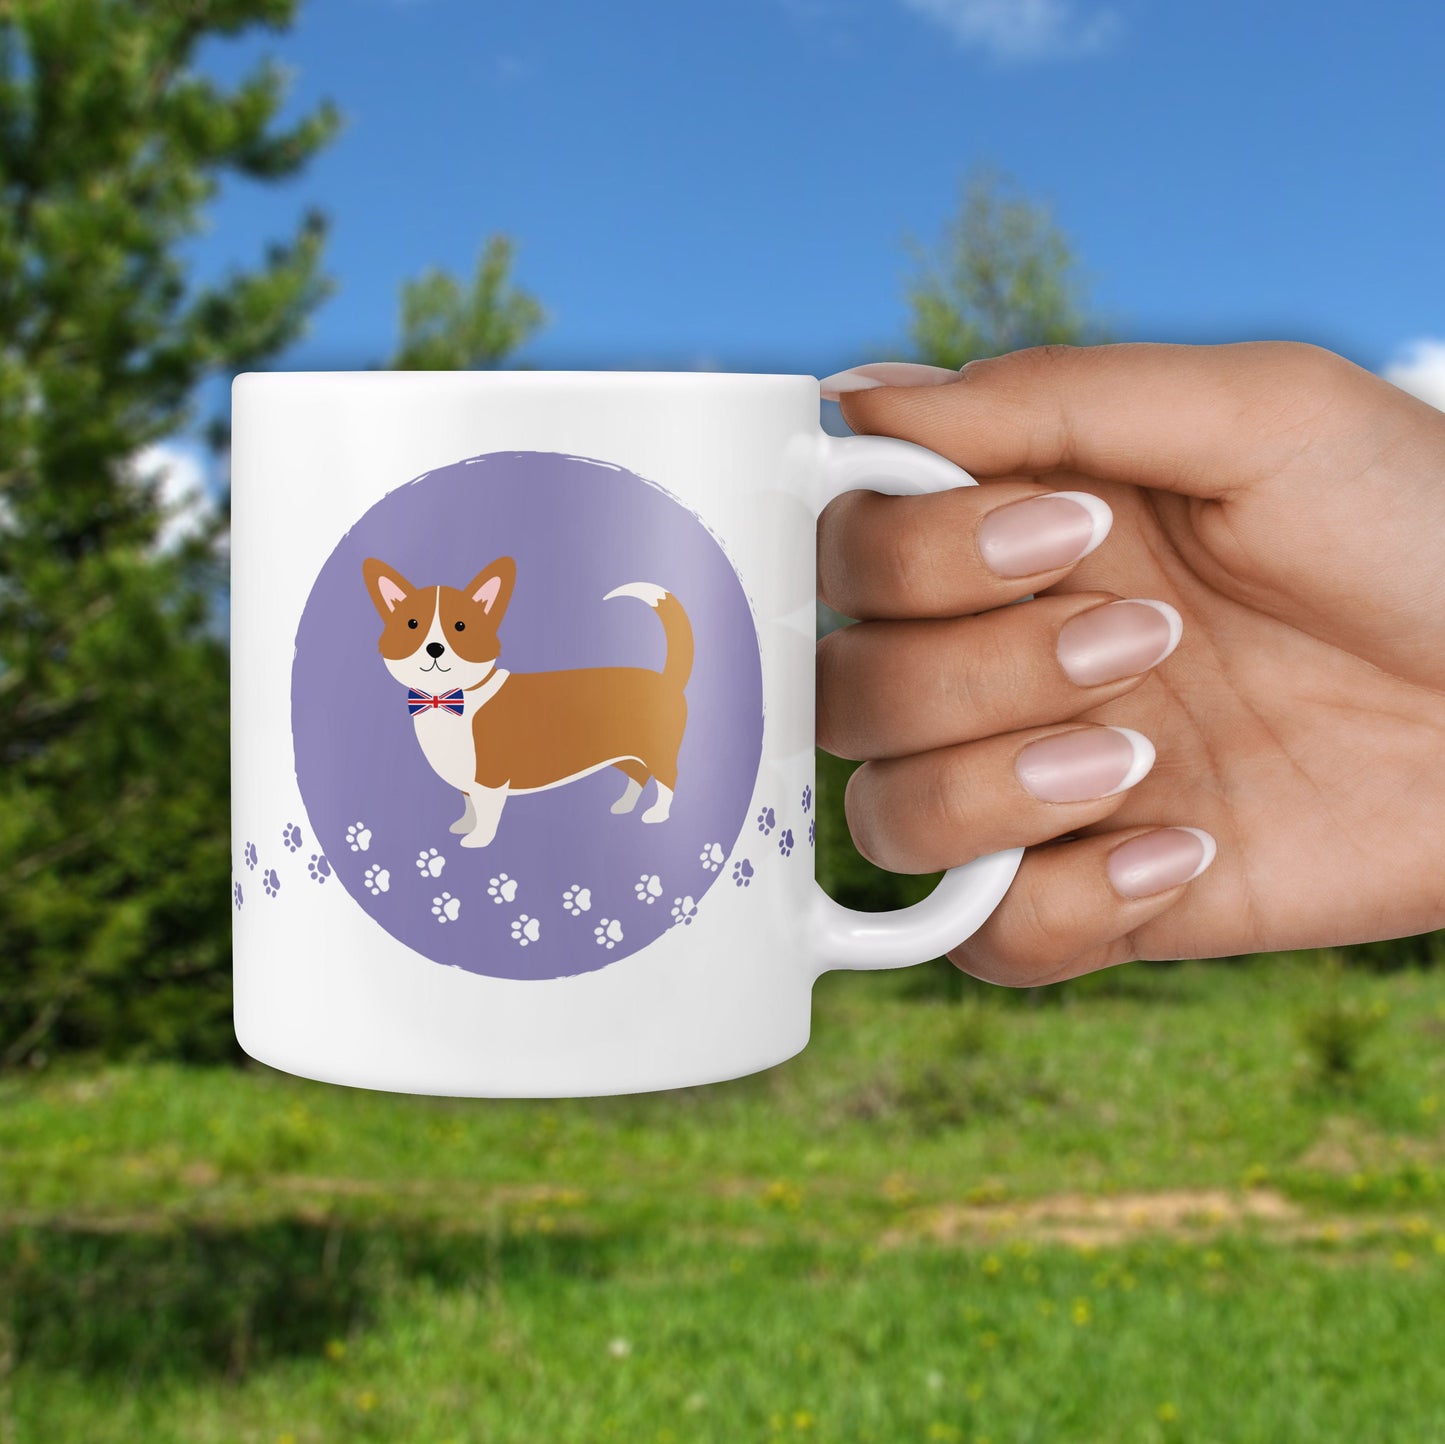 Personalised Corgi Dog Mug & Coaster Gift Set